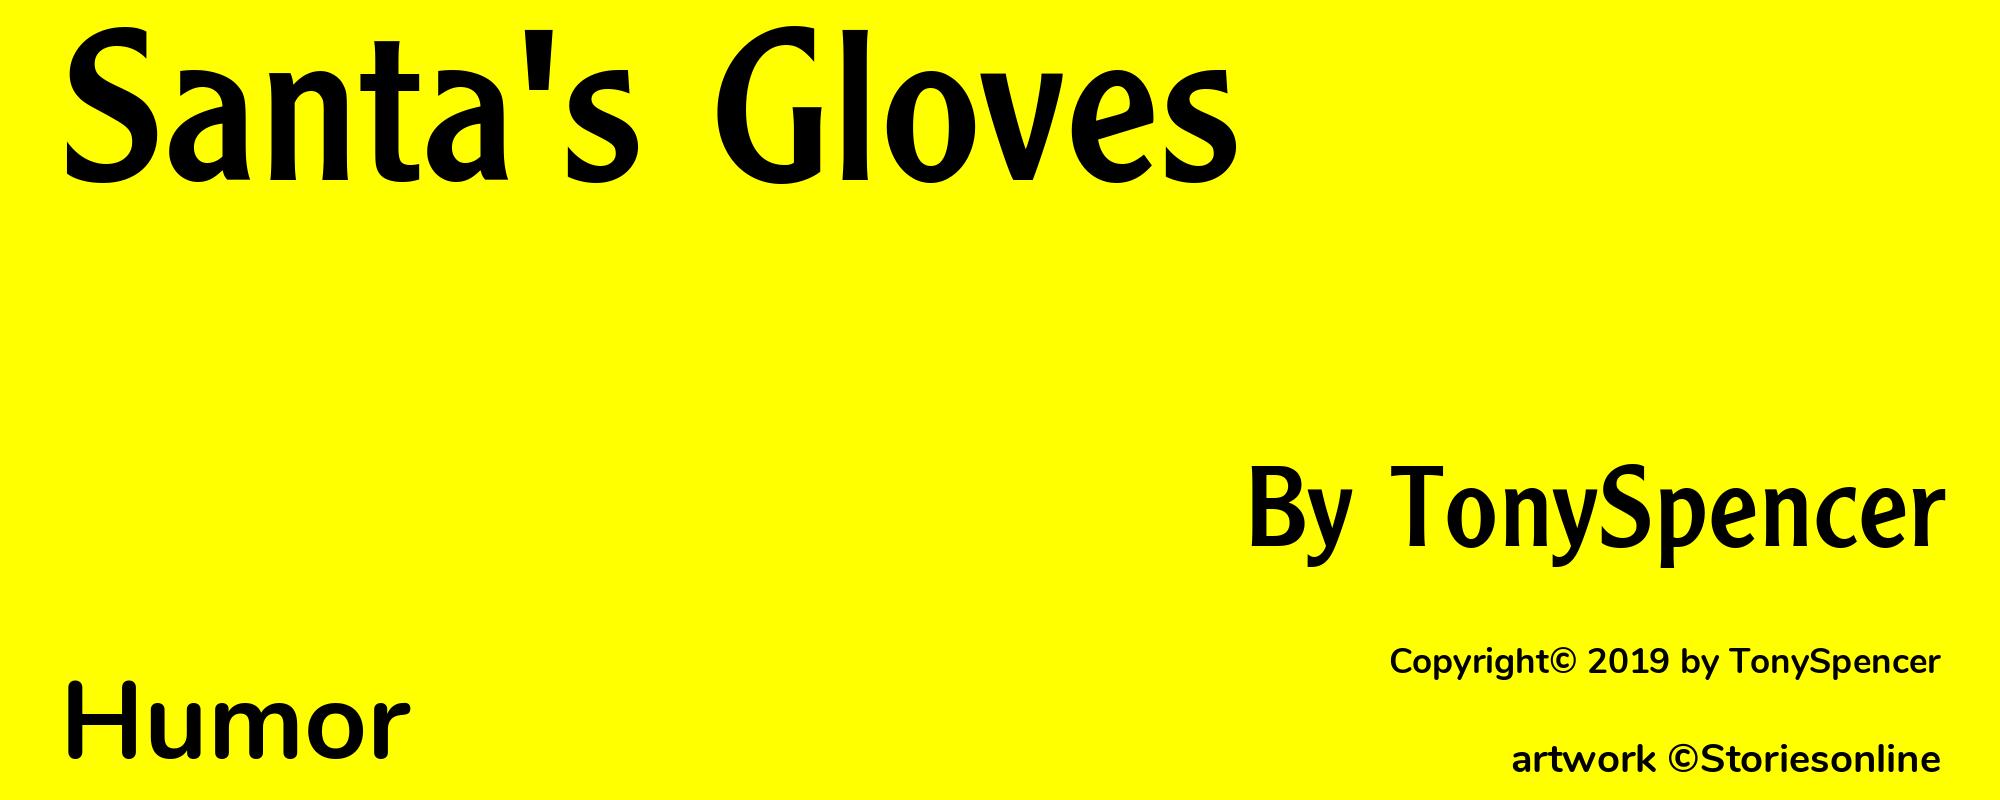 Santa's Gloves - Cover